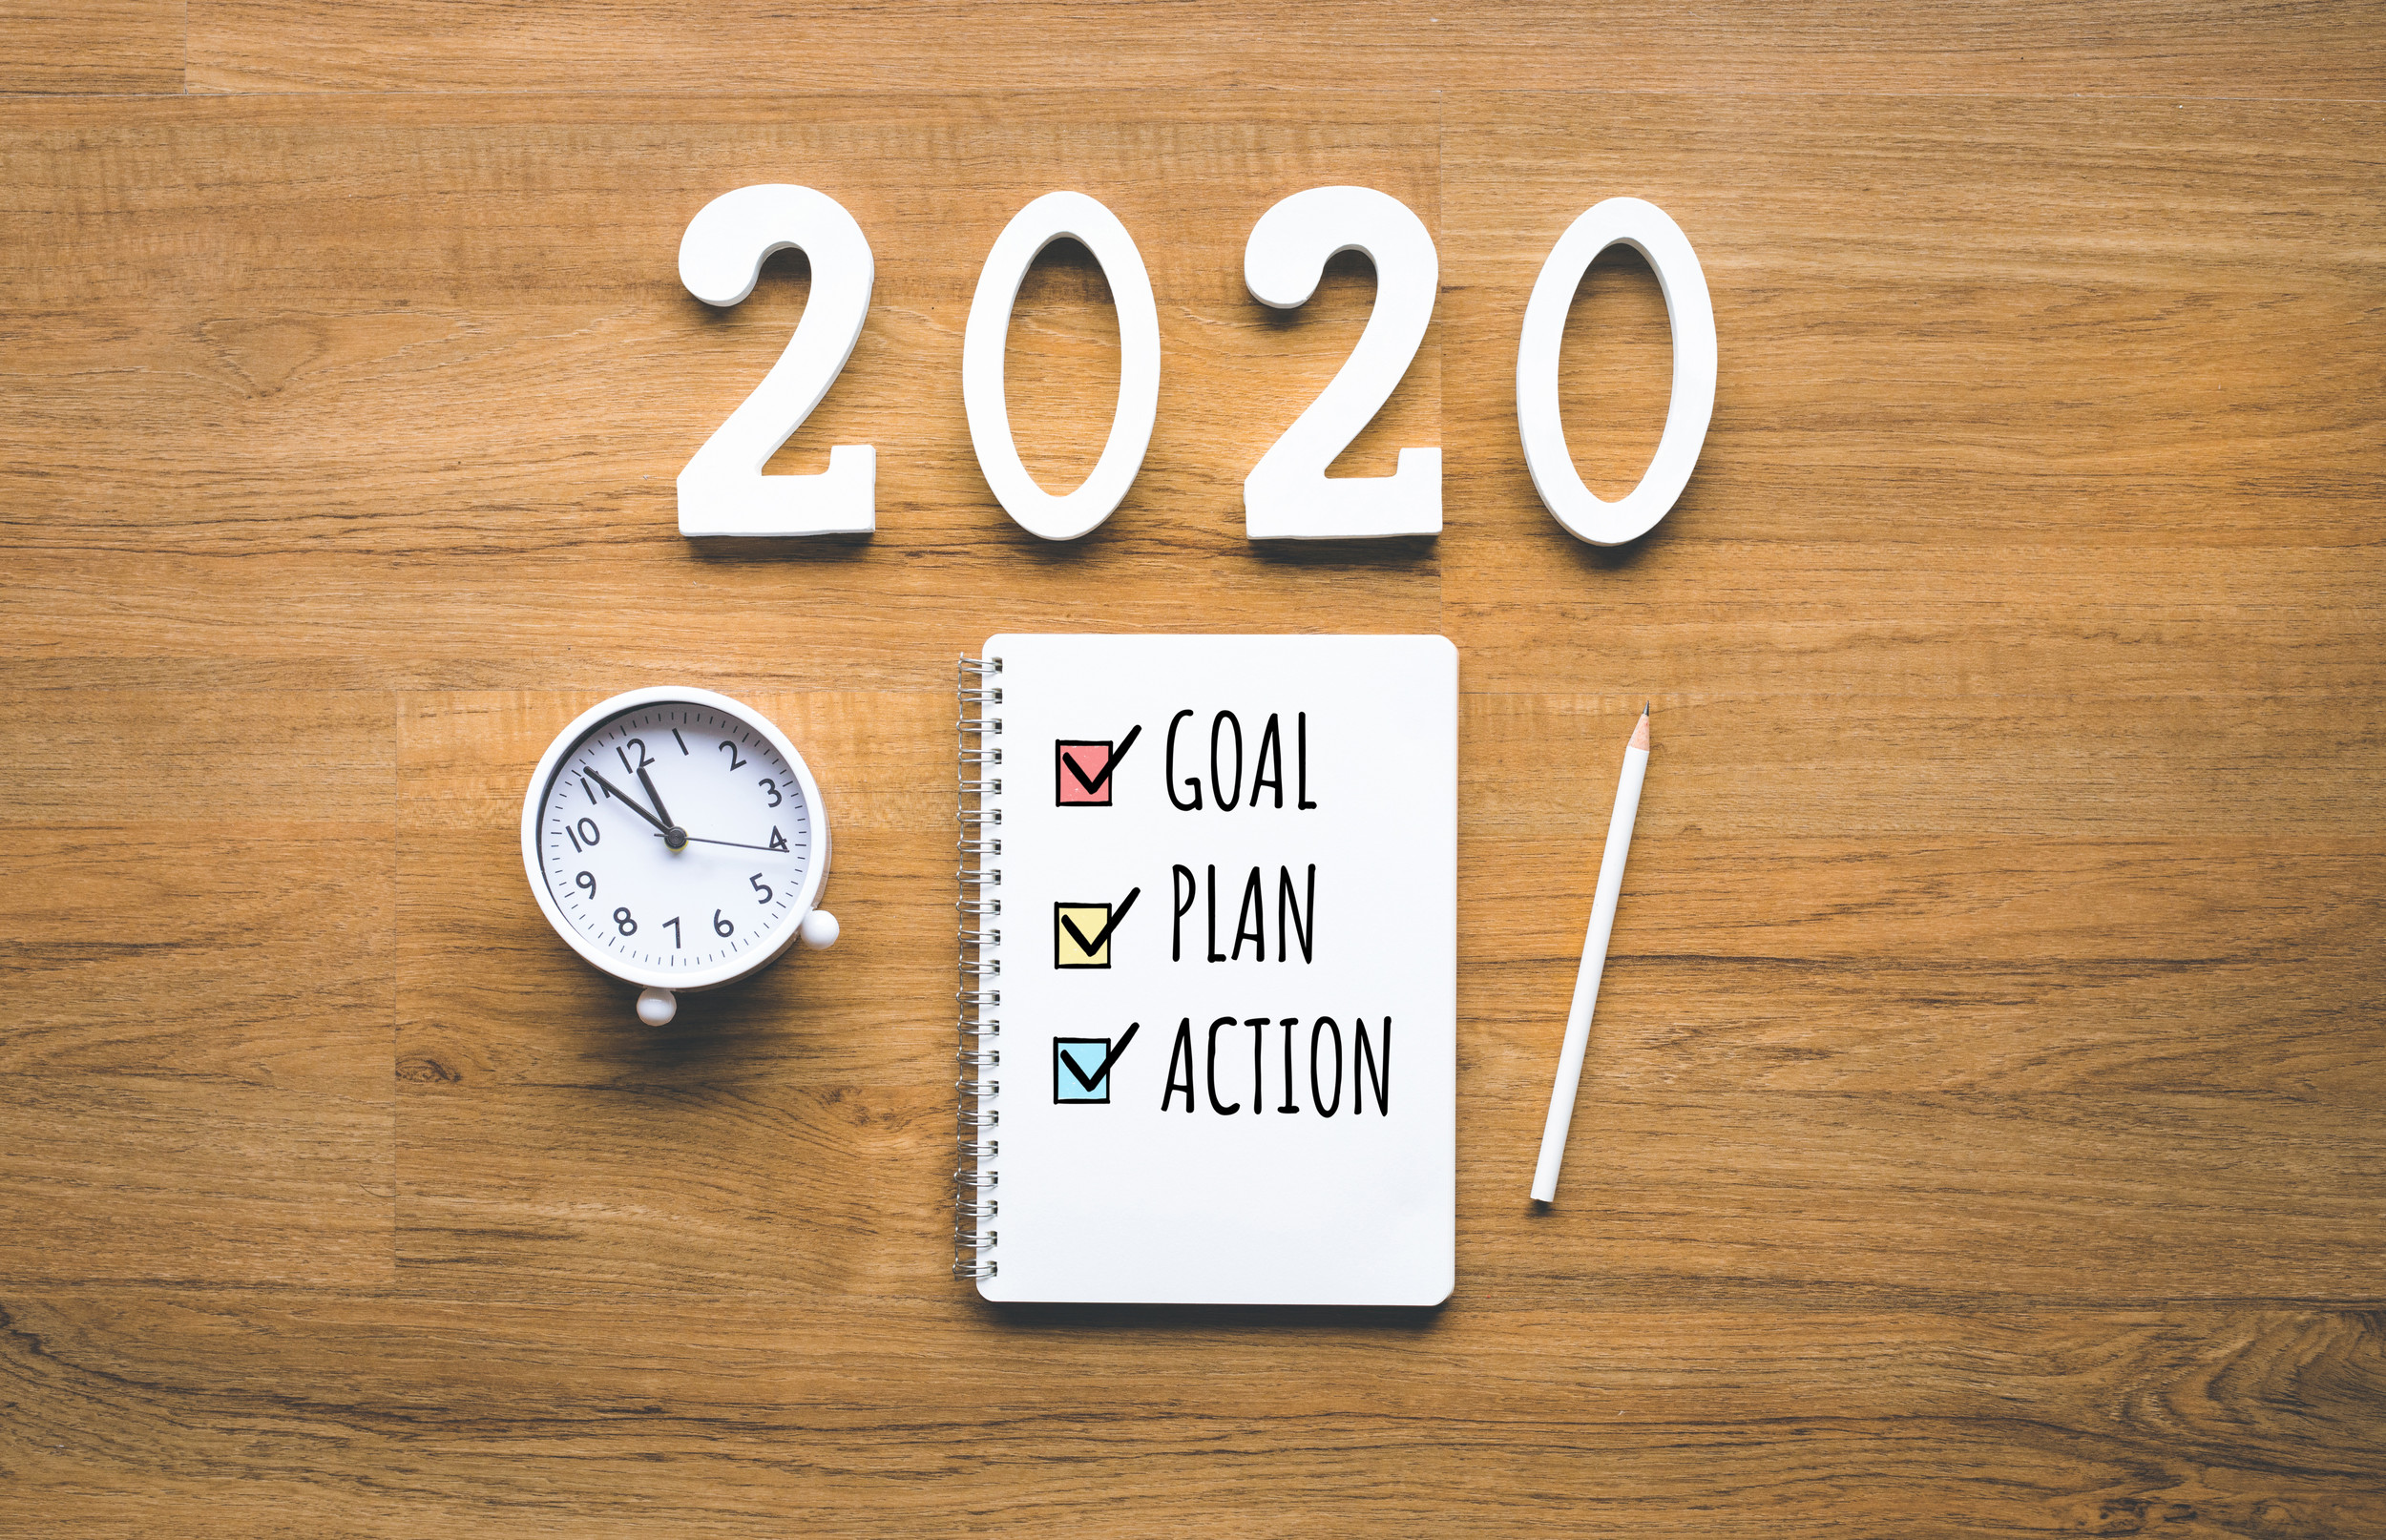 2020 nyårsmål, plan, handlingstext på anteckningsblock på träbakgrund. Affärsutmaning. Inspirationsidéer